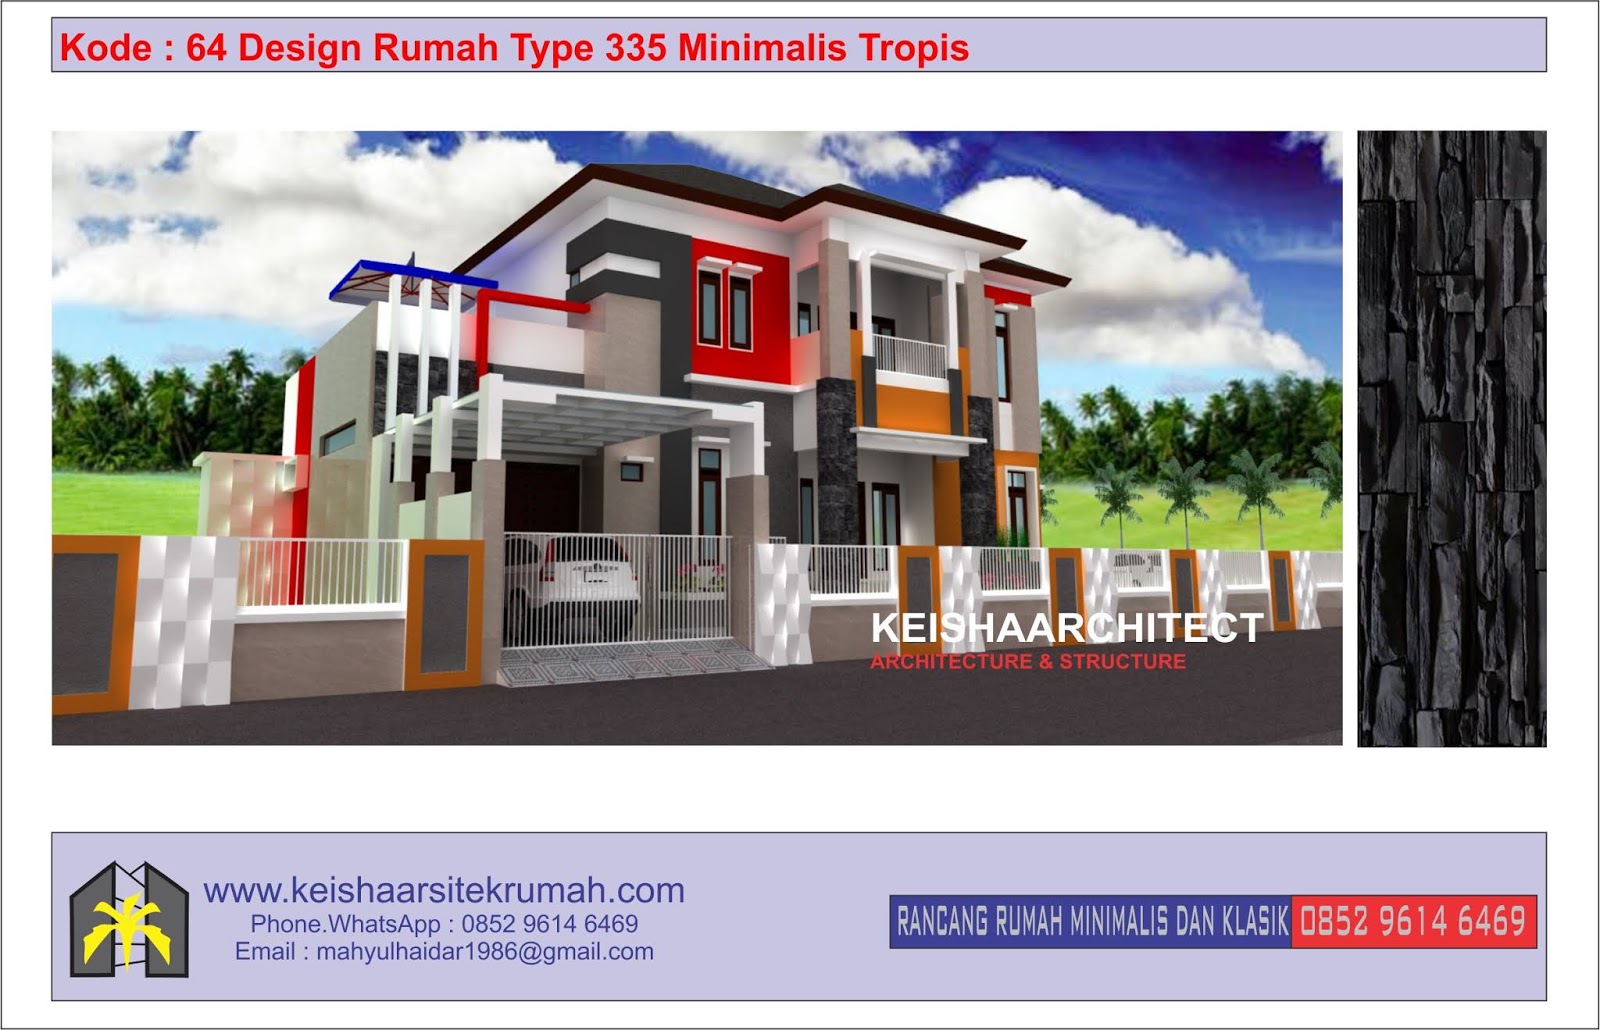 Kode 64 Design Rumah Type 335 Minimalis Tropis Lokasi Sigli